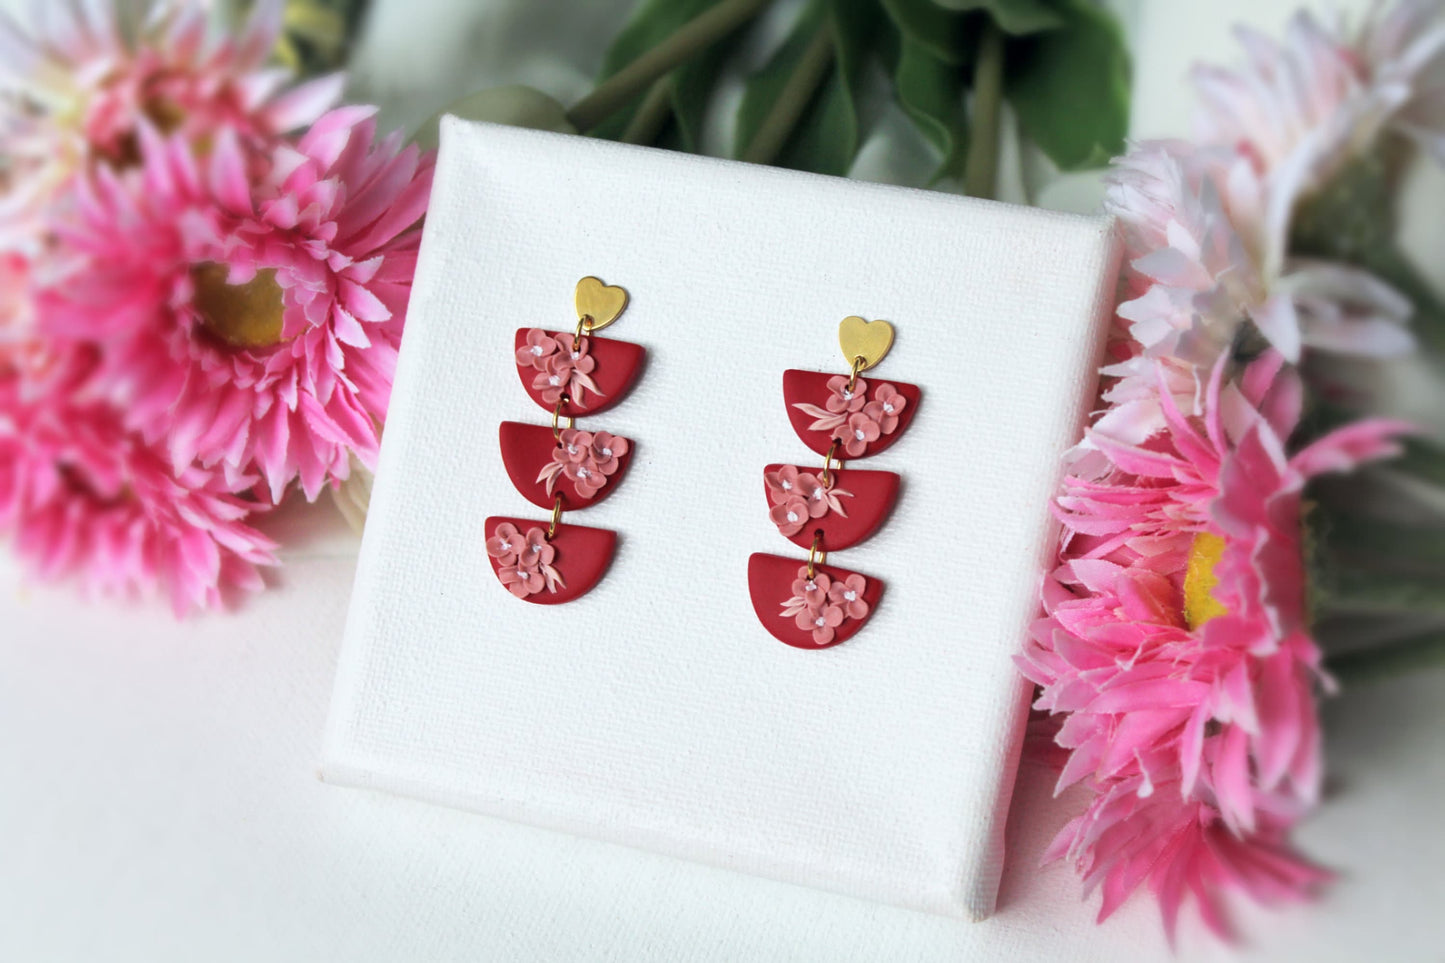 Flower Clay Earrings, Statement Earrings, Valentine's Earrings, Gift, Polymer Clay Earrings, Floral Earrings Dangle,Floral Earrings,Handmade